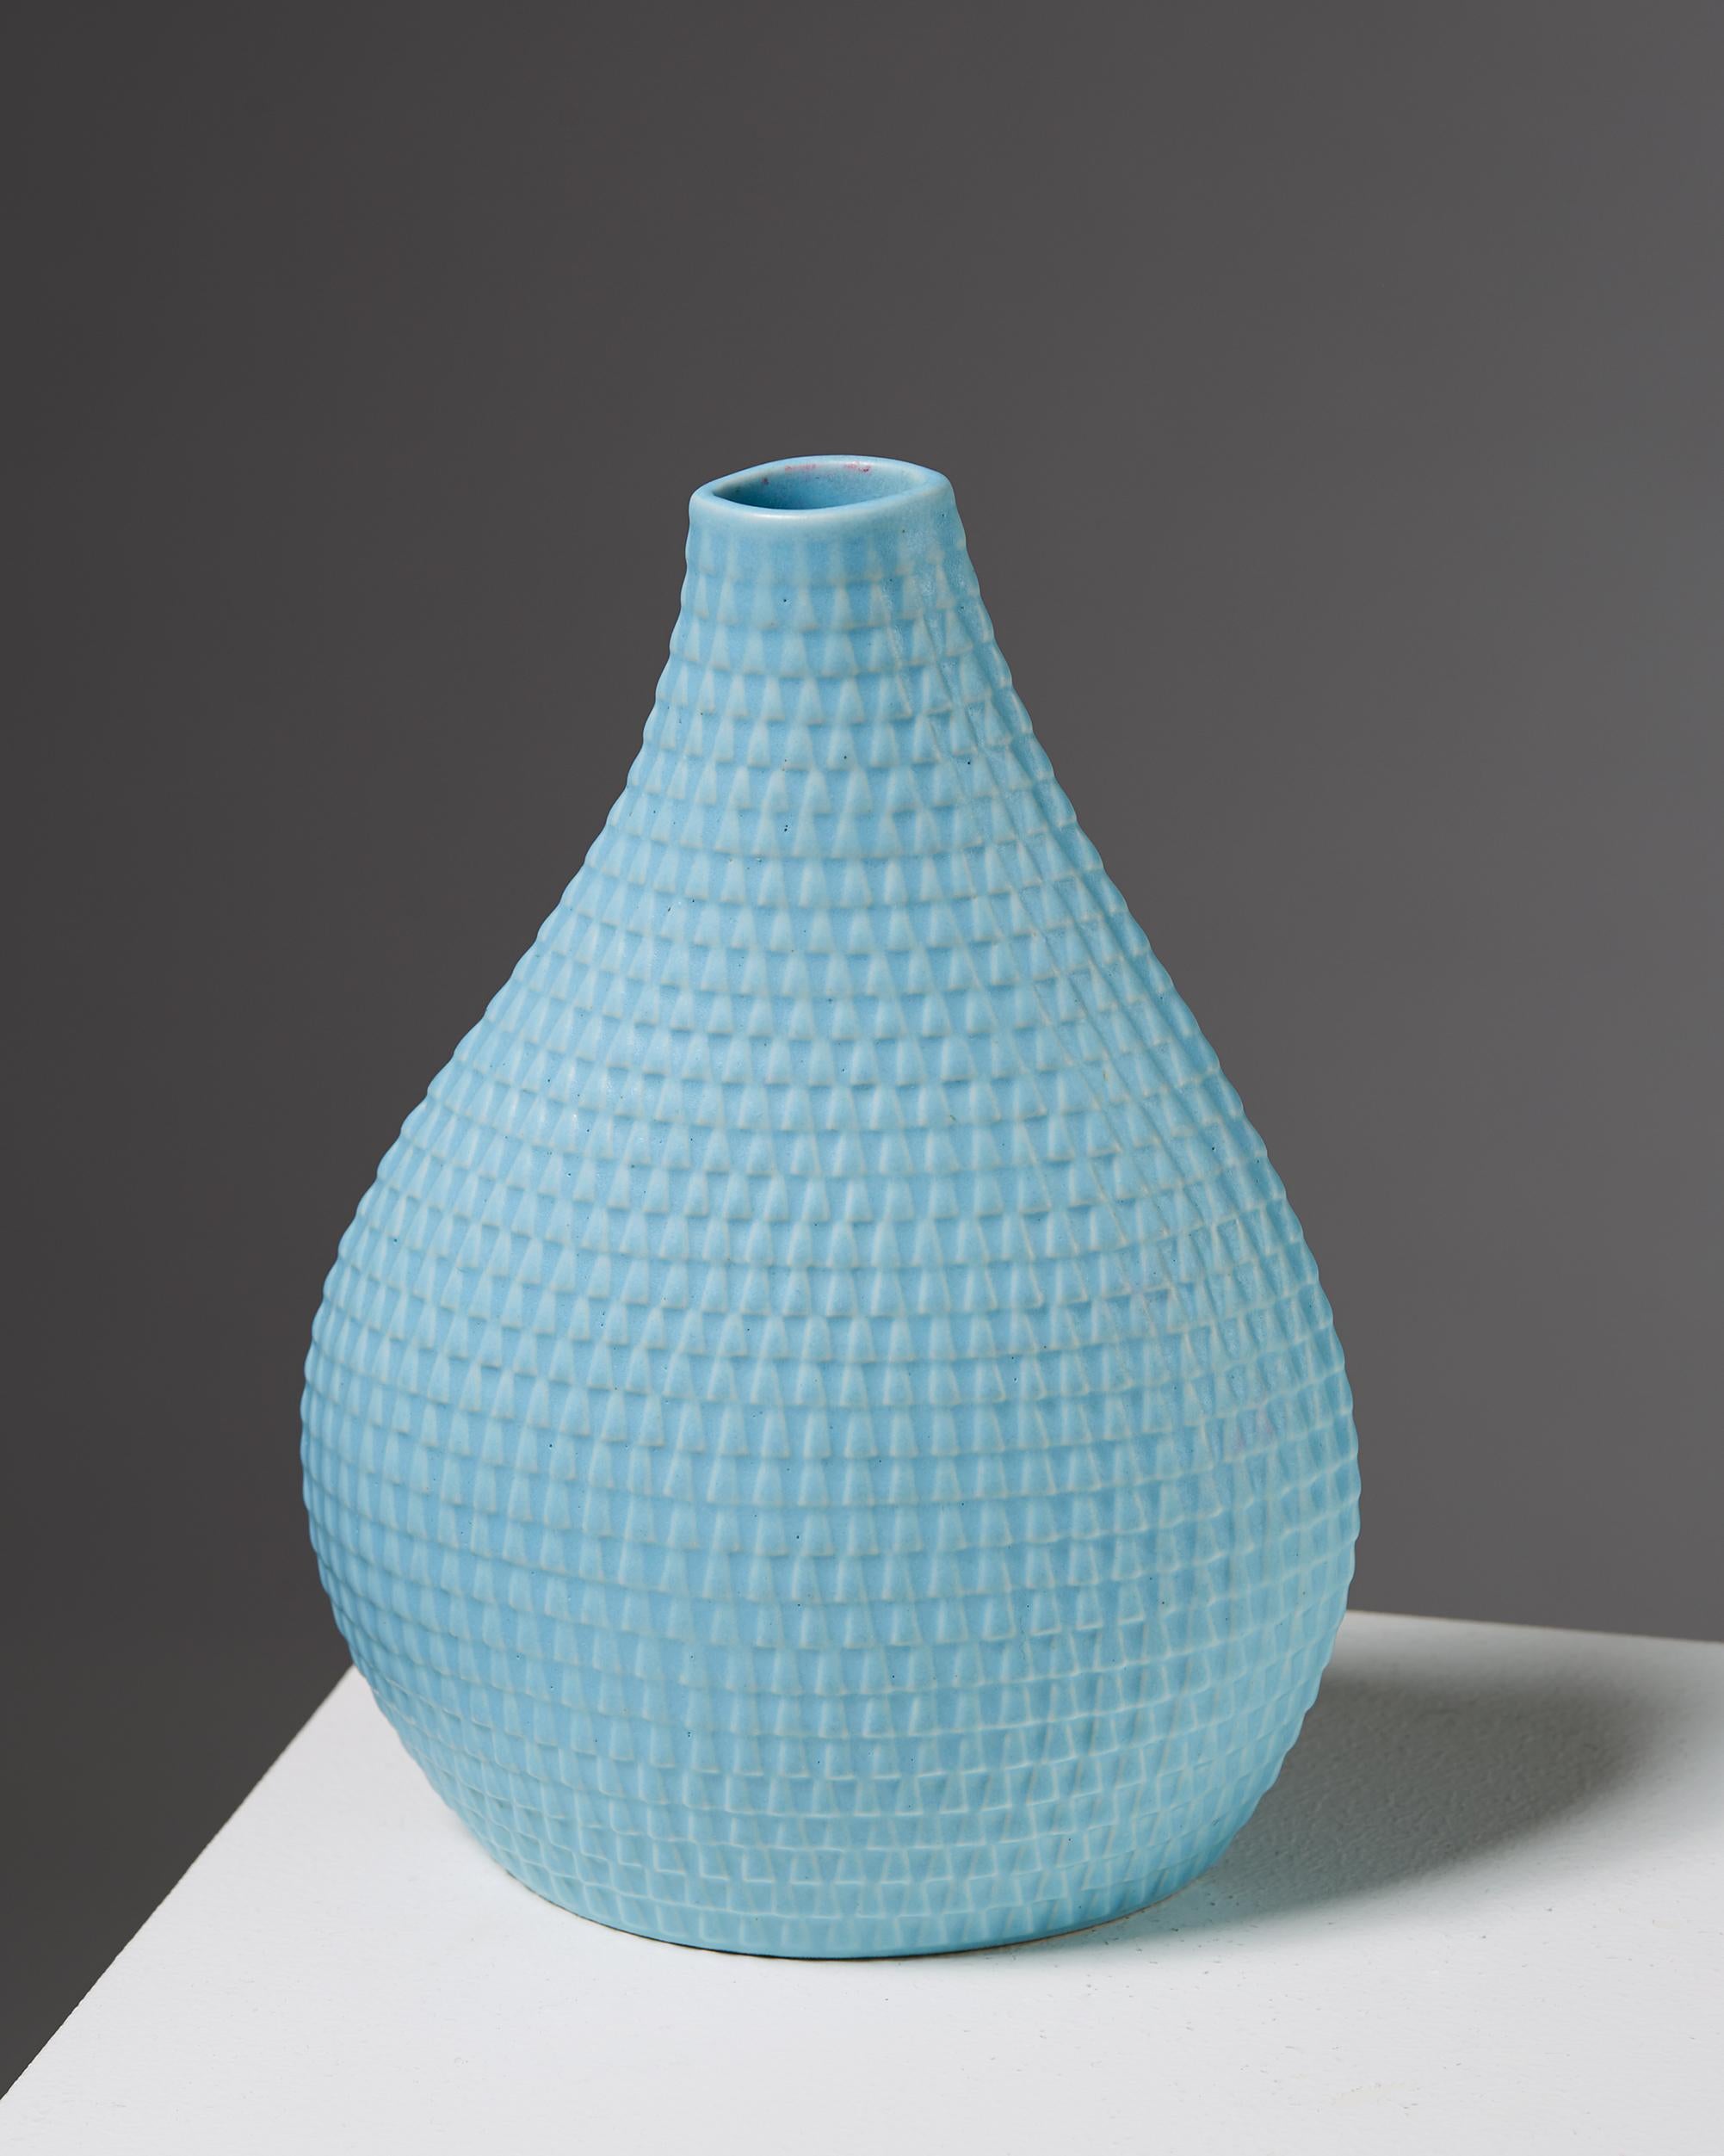 Swedish Vase “Reptile” Designed by Stig Lindberg for Gustavsberg, Sweden, 1953